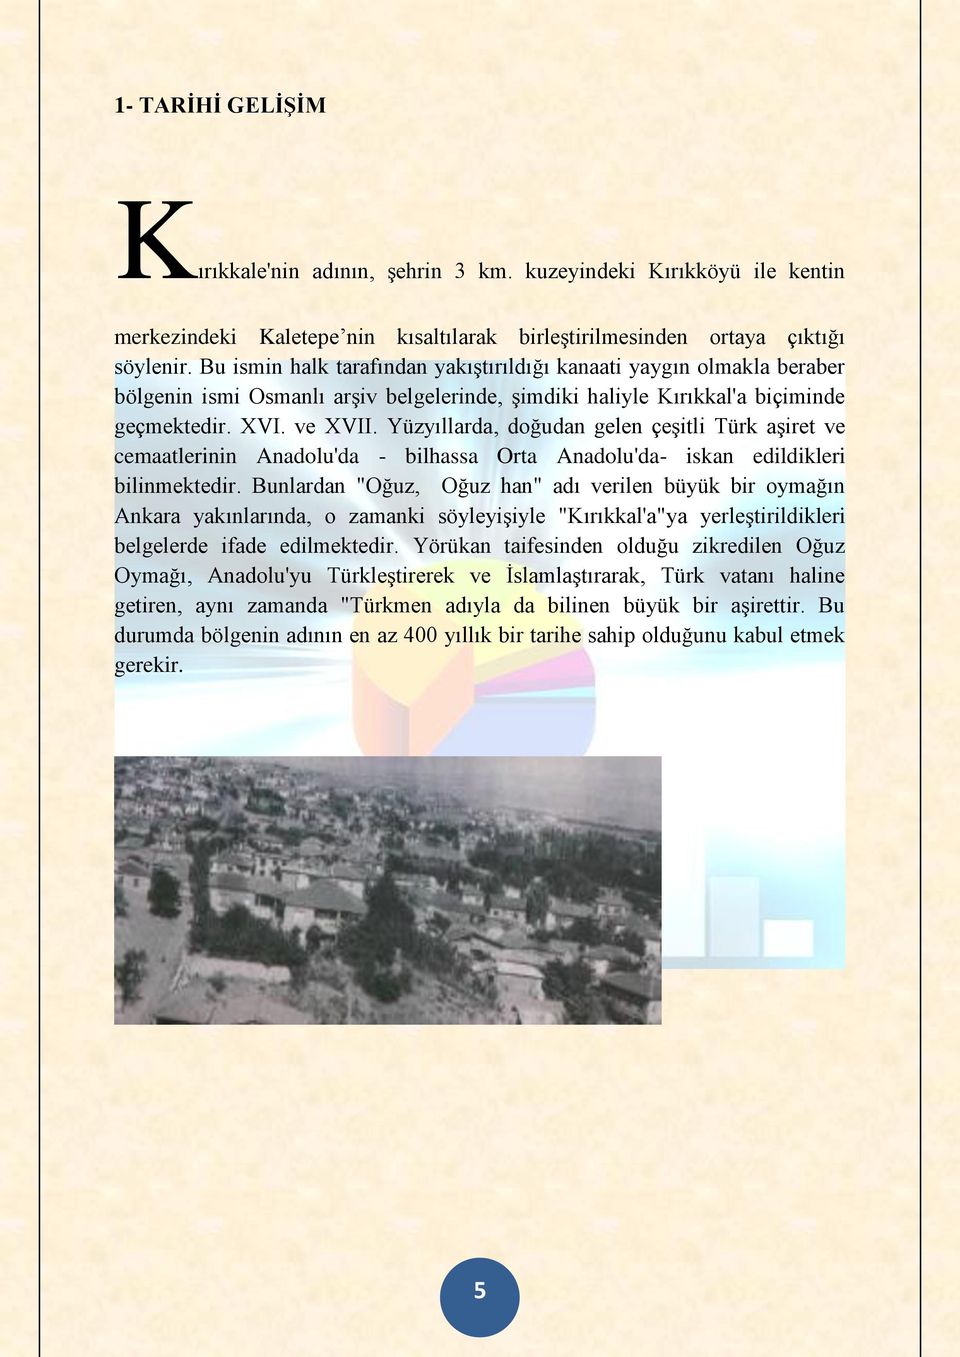 Yüzyıllarda, doğudan gelen çeşitli Türk aşiret ve cemaatlerinin Anadolu'da - bilhassa Orta Anadolu'da- iskan edildikleri bilinmektedir.